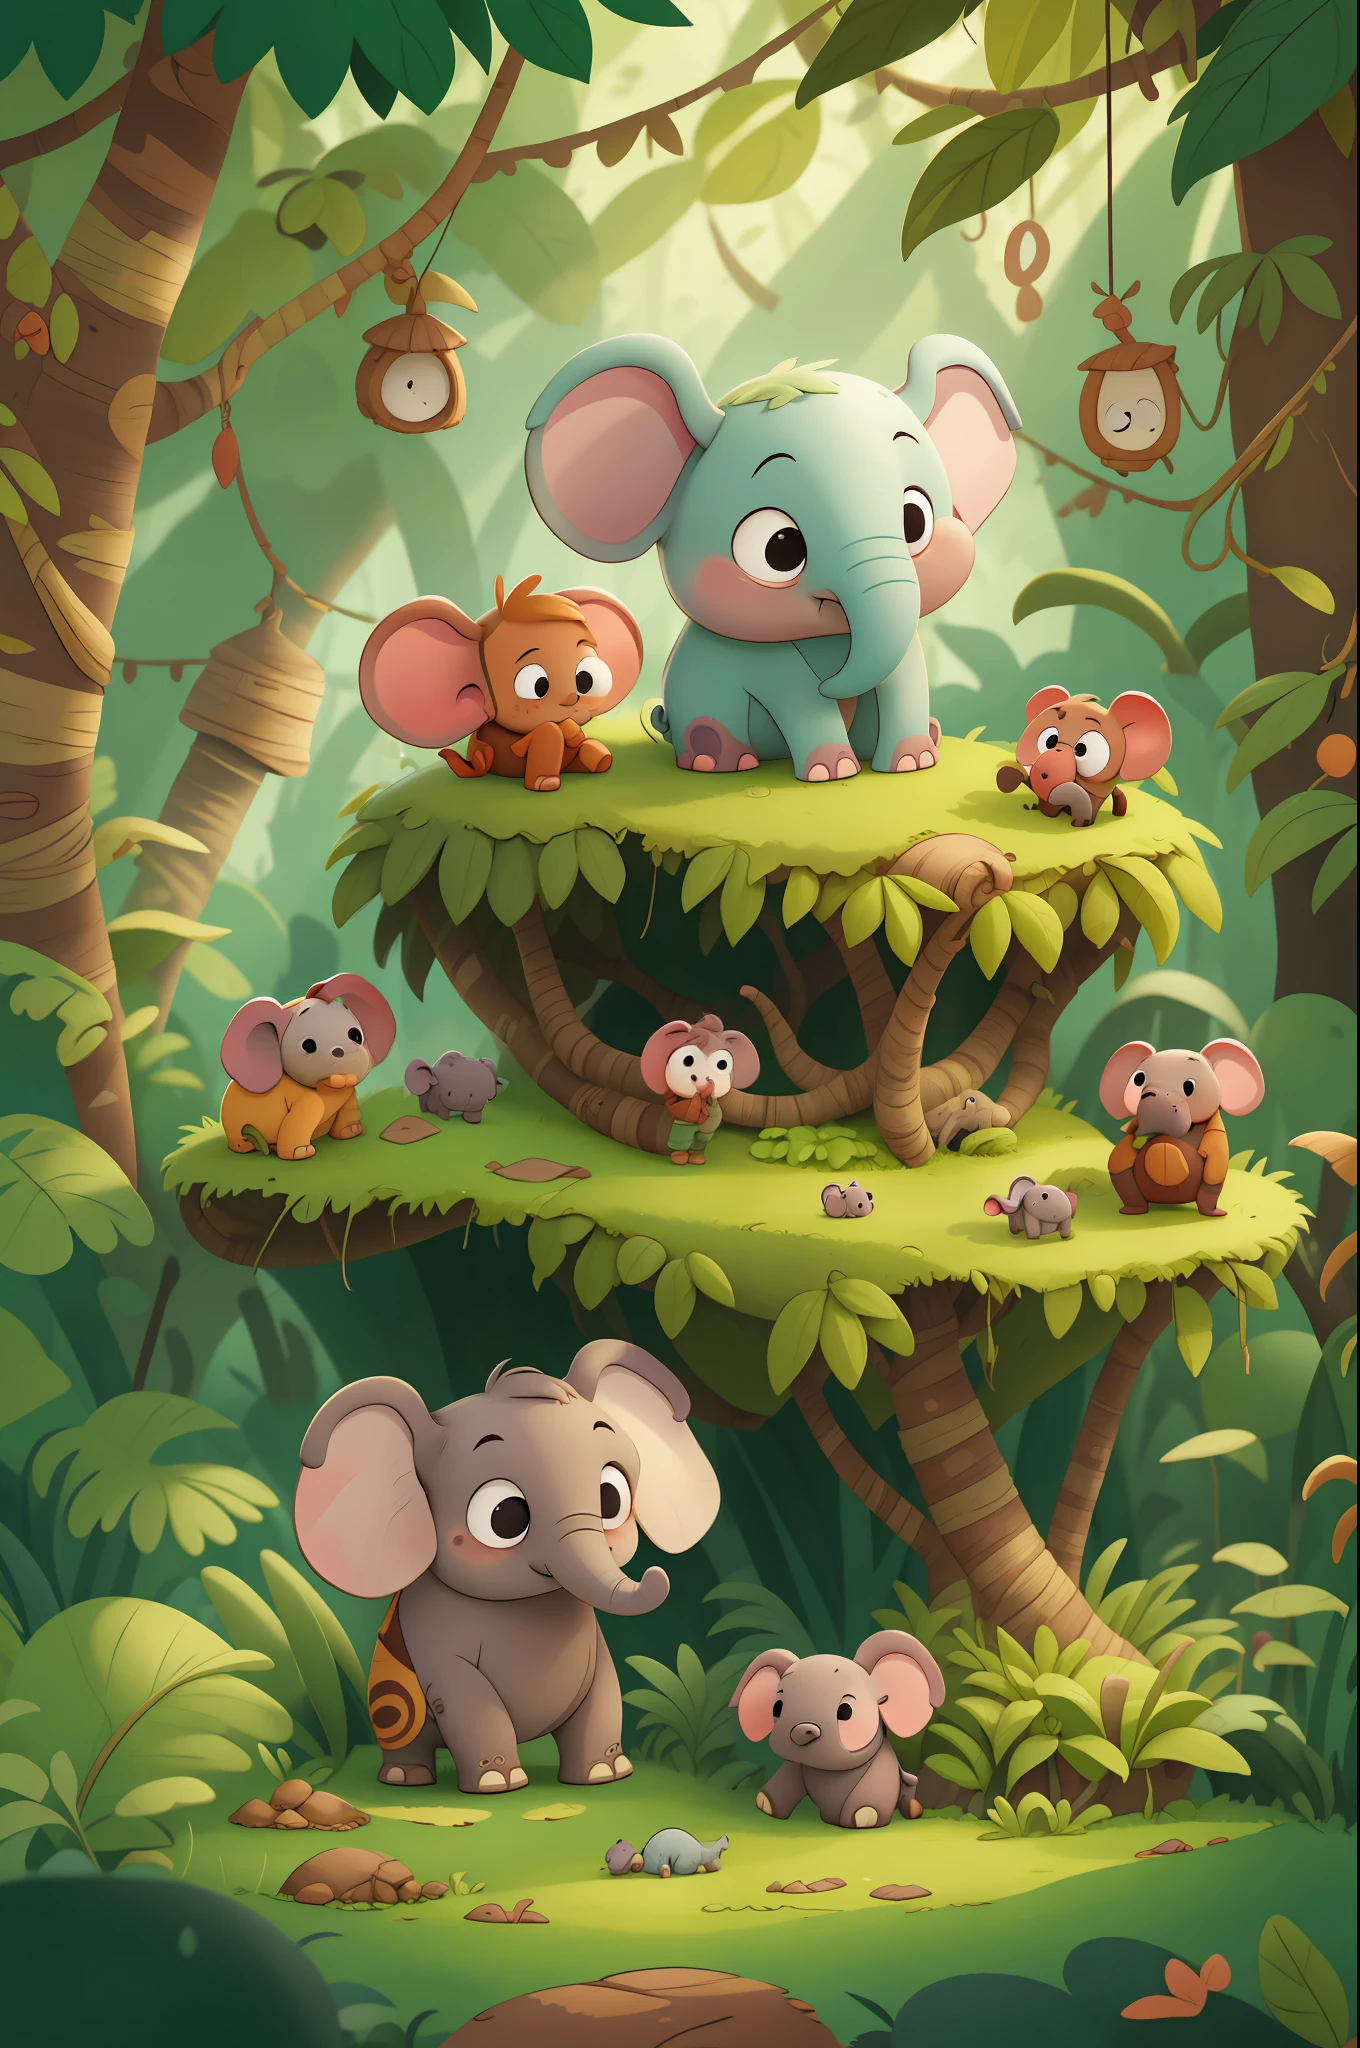 Es war einmal ein kleiner Elefant namens Doug, der mit seiner Familie im Dschungel lebte. Doug war sehr neugierig und liebte es, die Welt um ihn herum zu erkunden. Kinderbuch, im Animationsstil.